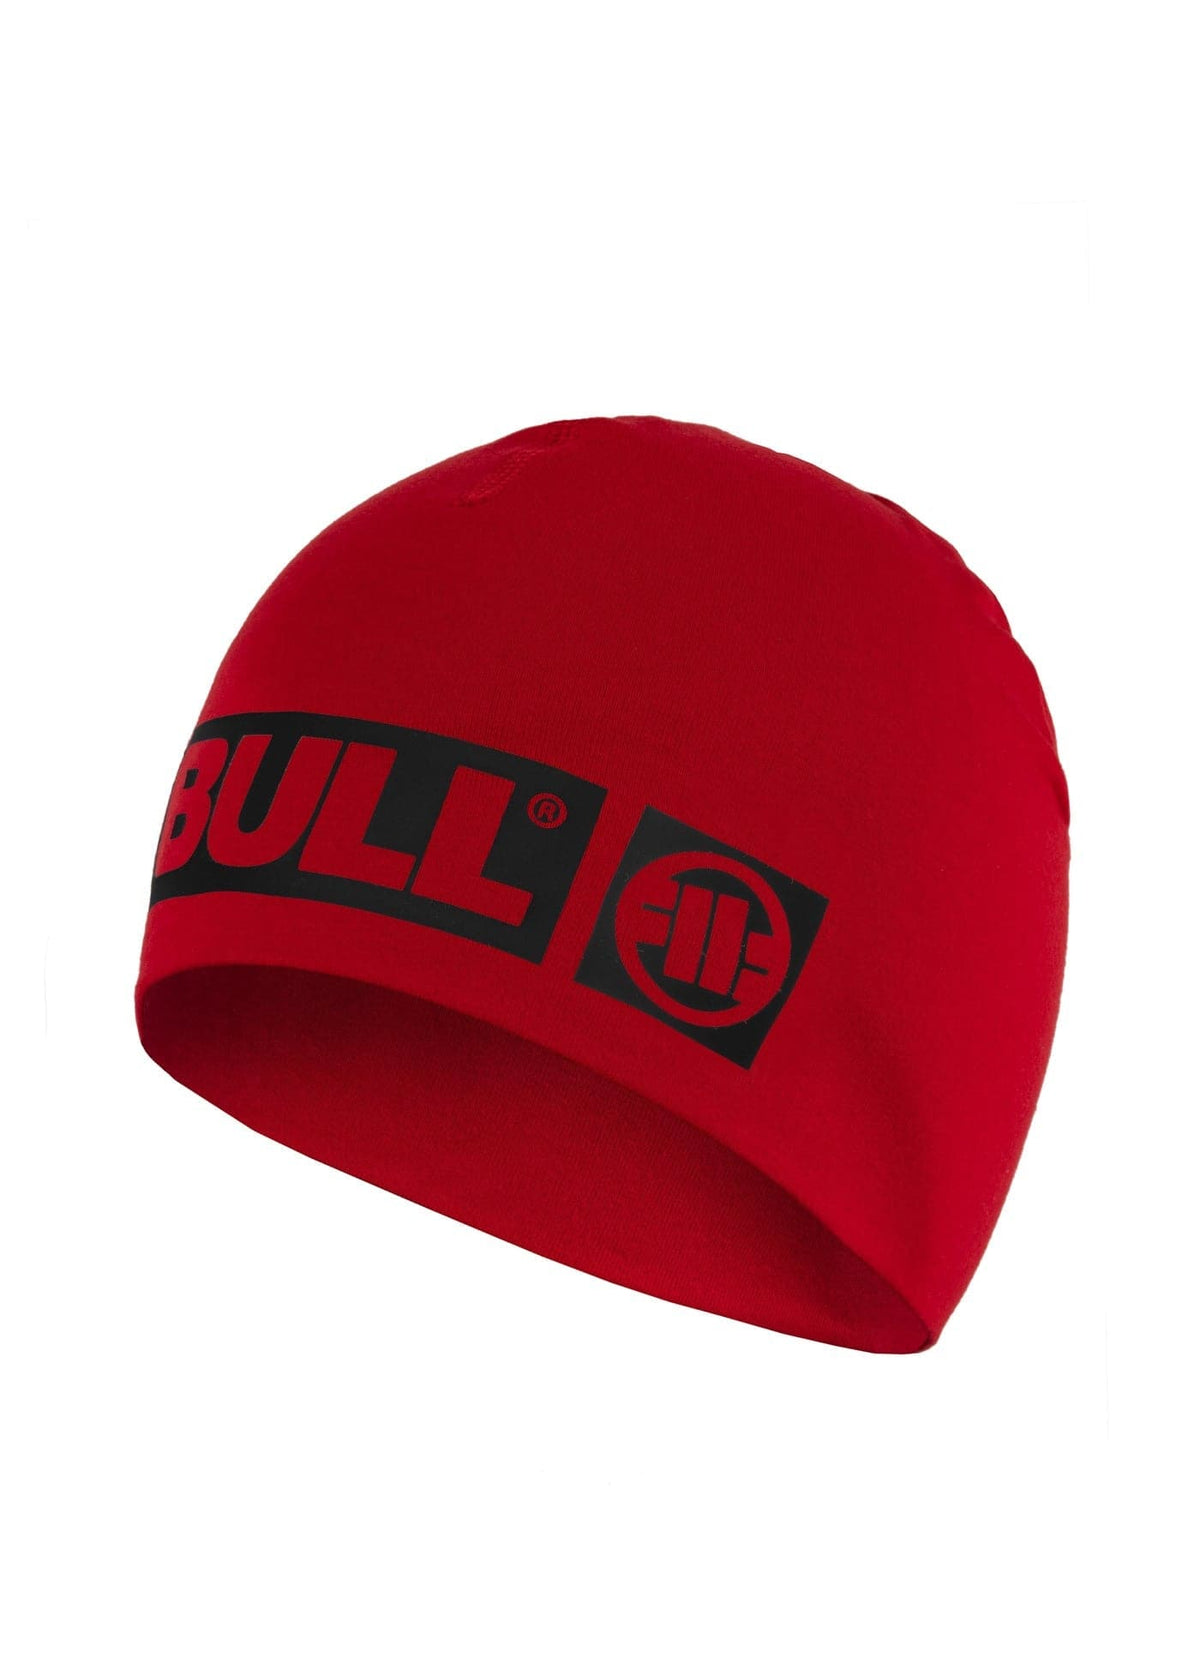 HILLTOP 2 Red Compression Beanie - Pitbullstore.eu